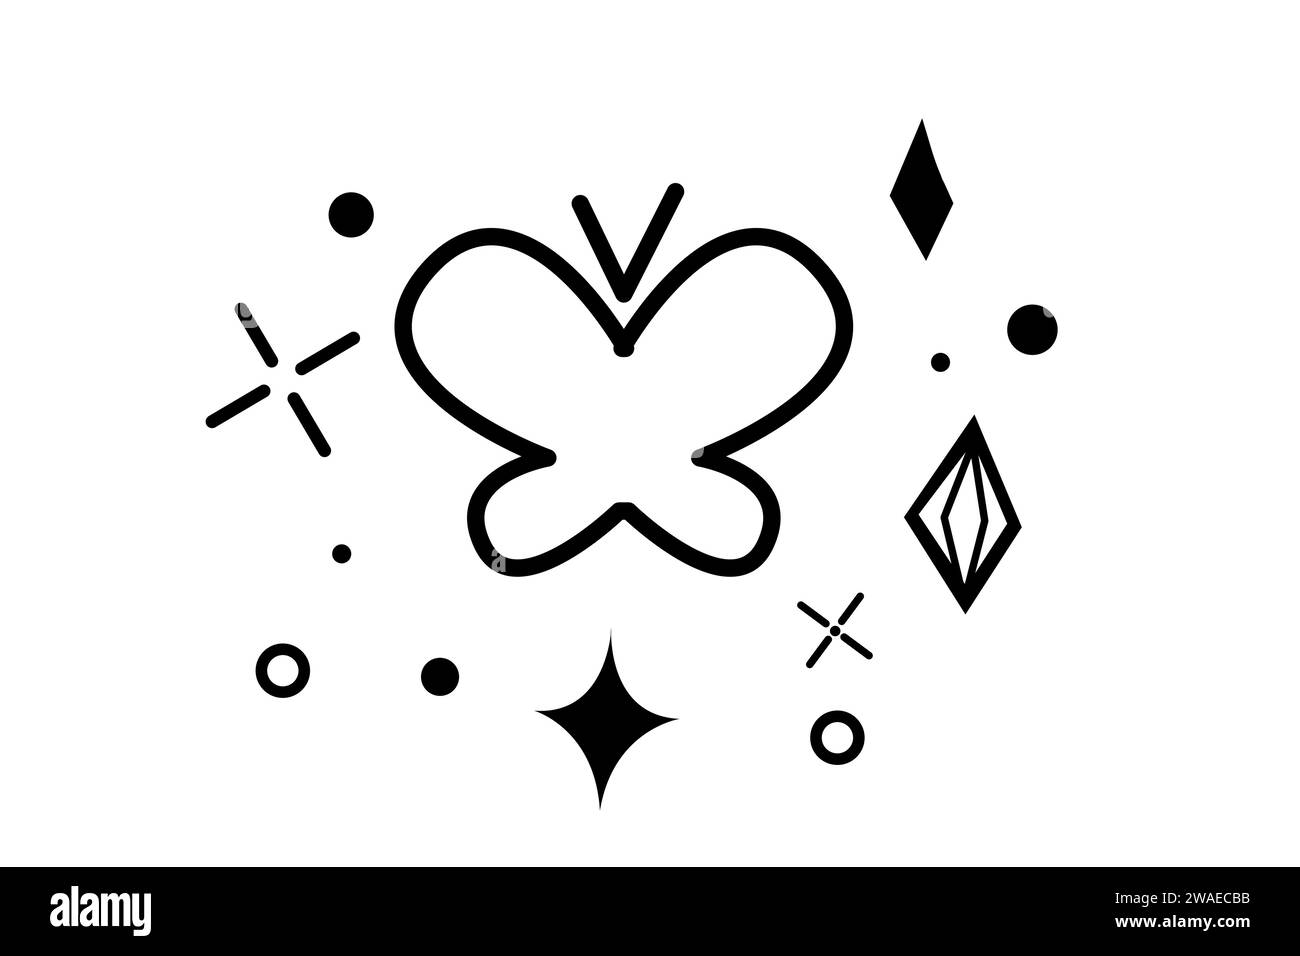 Baterfly avec des fleurs mignonnes, arc-en-ciel, éclats dans le style doodle isolé sur fond blanc. Dessin d'esquisse, dessin animé. Illustration vectorielle Illustration de Vecteur